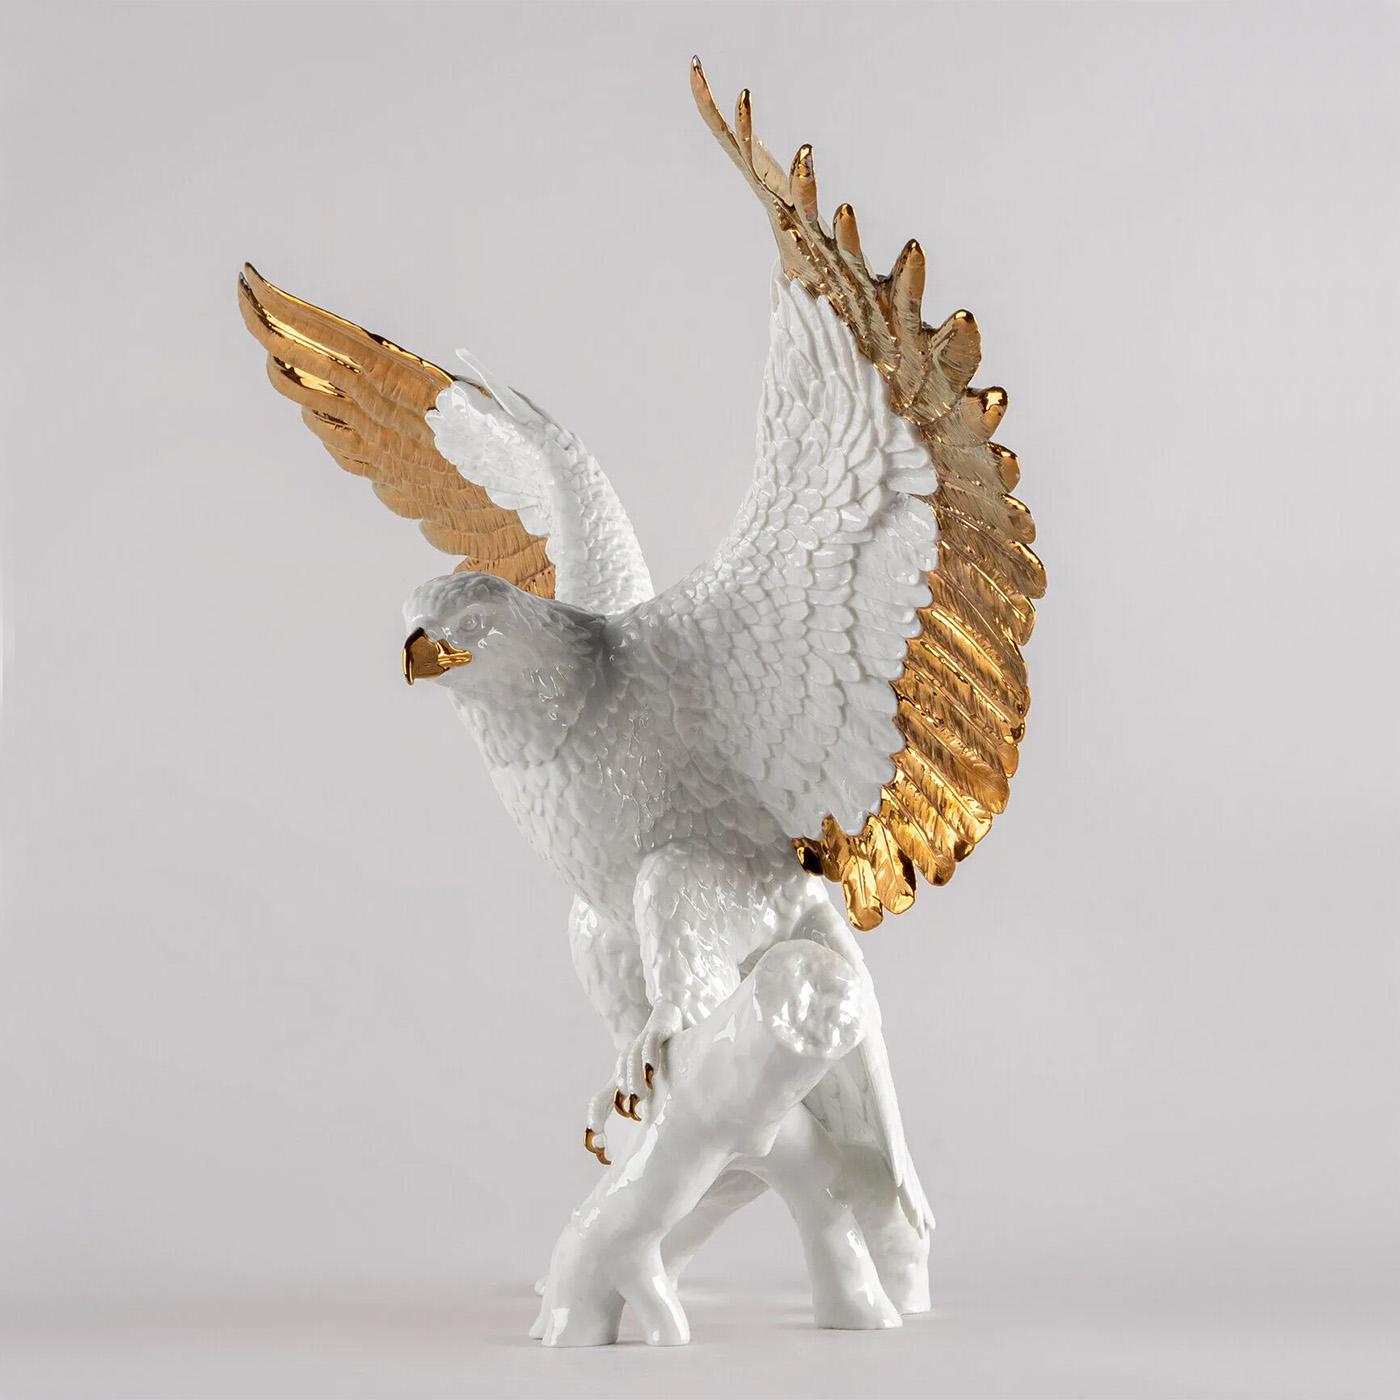 Skulptur Weißer Adler mit ganzer Struktur aus Porzellan 
in glänzender Ausführung und in glasierter Kupferglanzausführung.